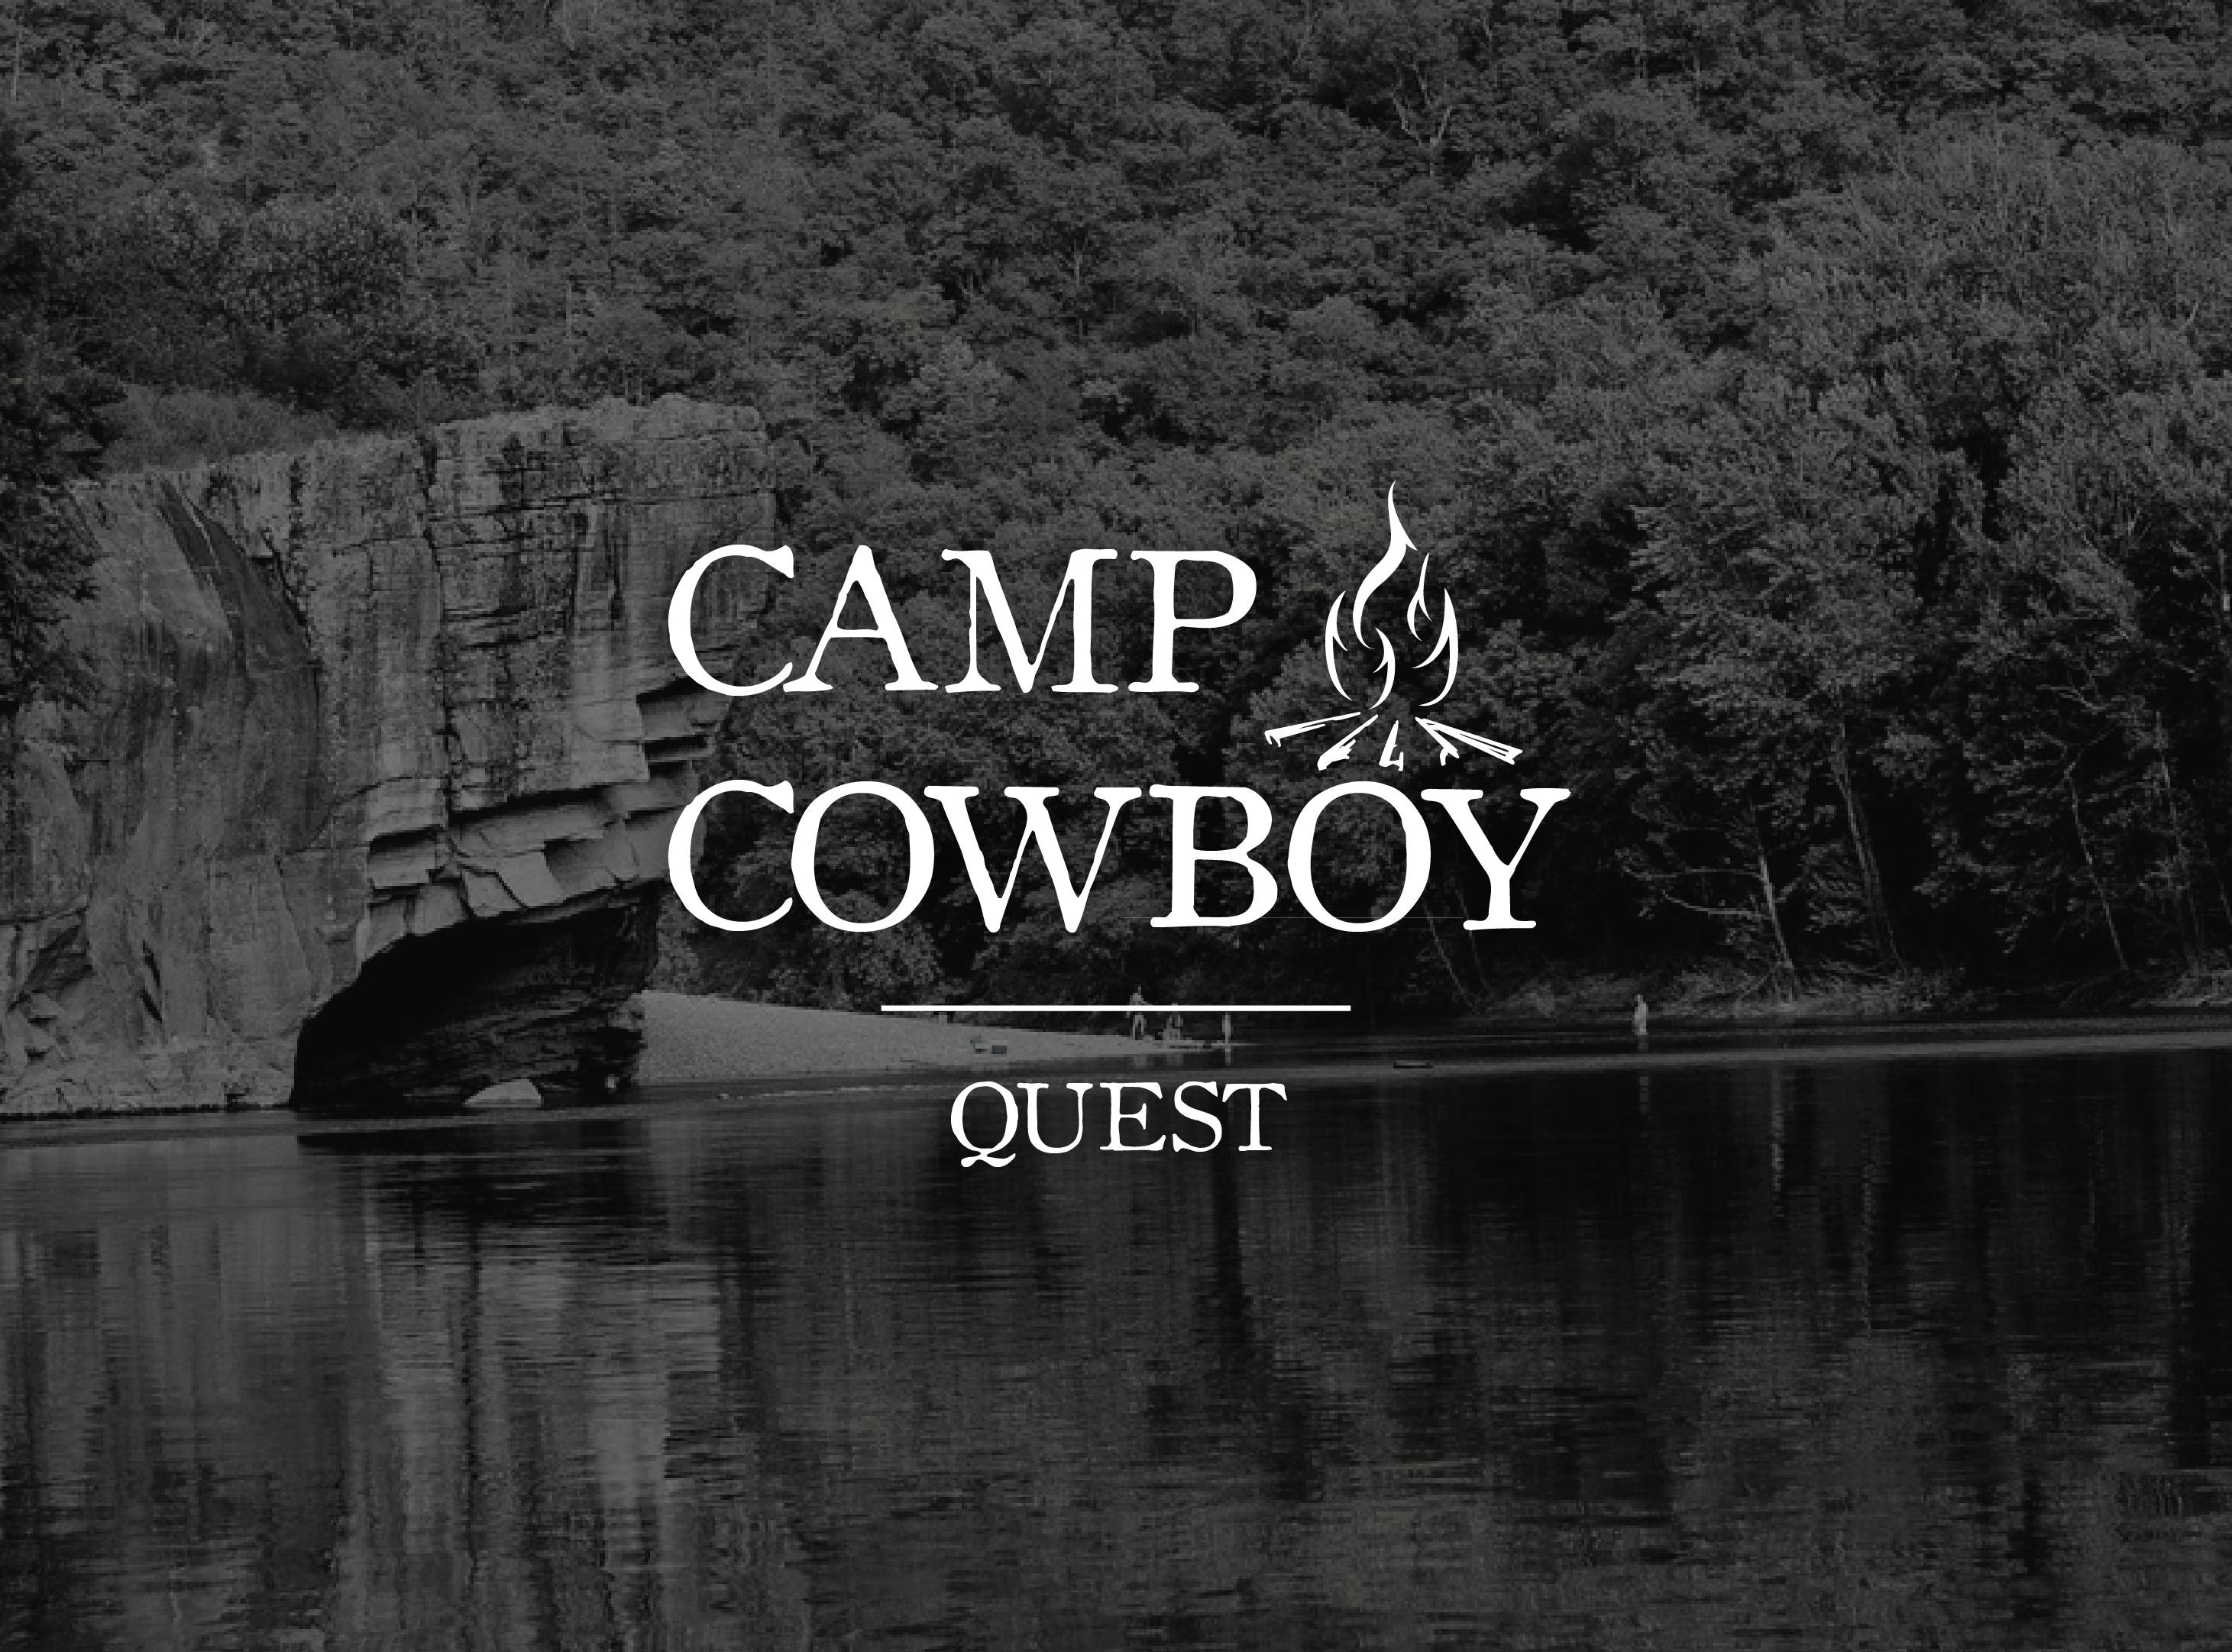 Camp Cowboy - Quest Camp